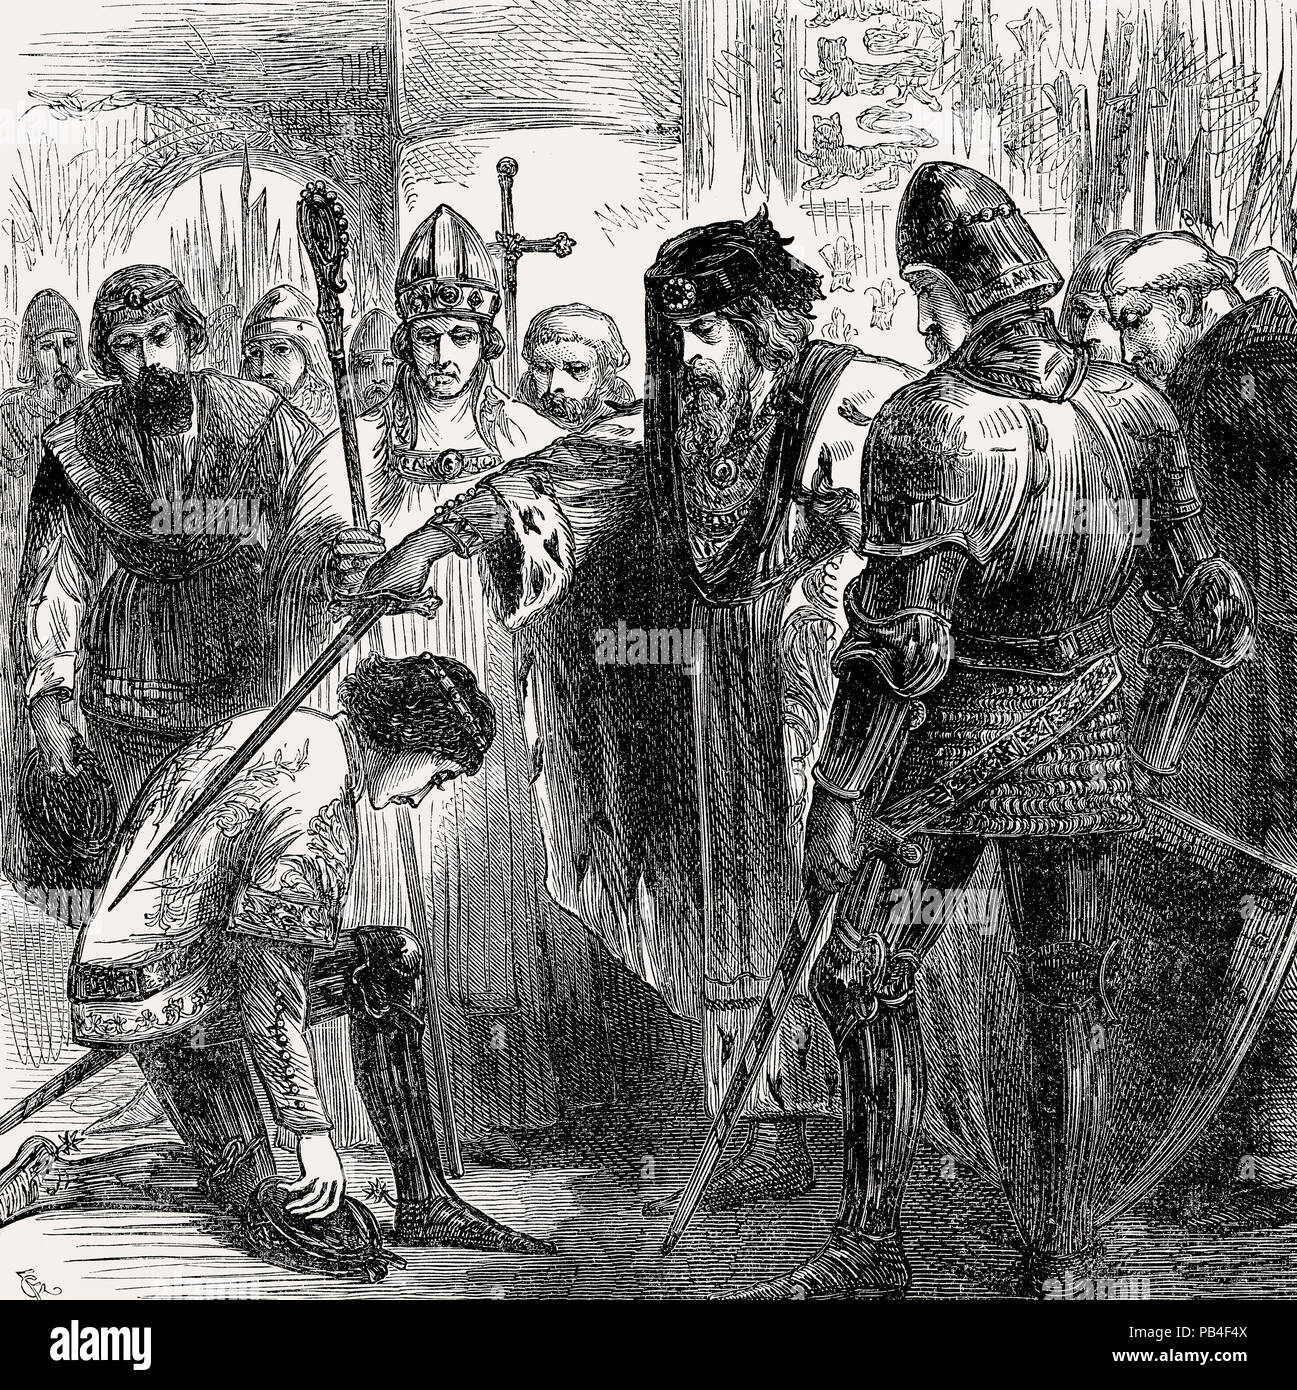 Le roi Édouard III knighting Edward de Woodstock, le Prince Noir en 1346, de la bataille sur terre et mer, par James Grant Banque D'Images